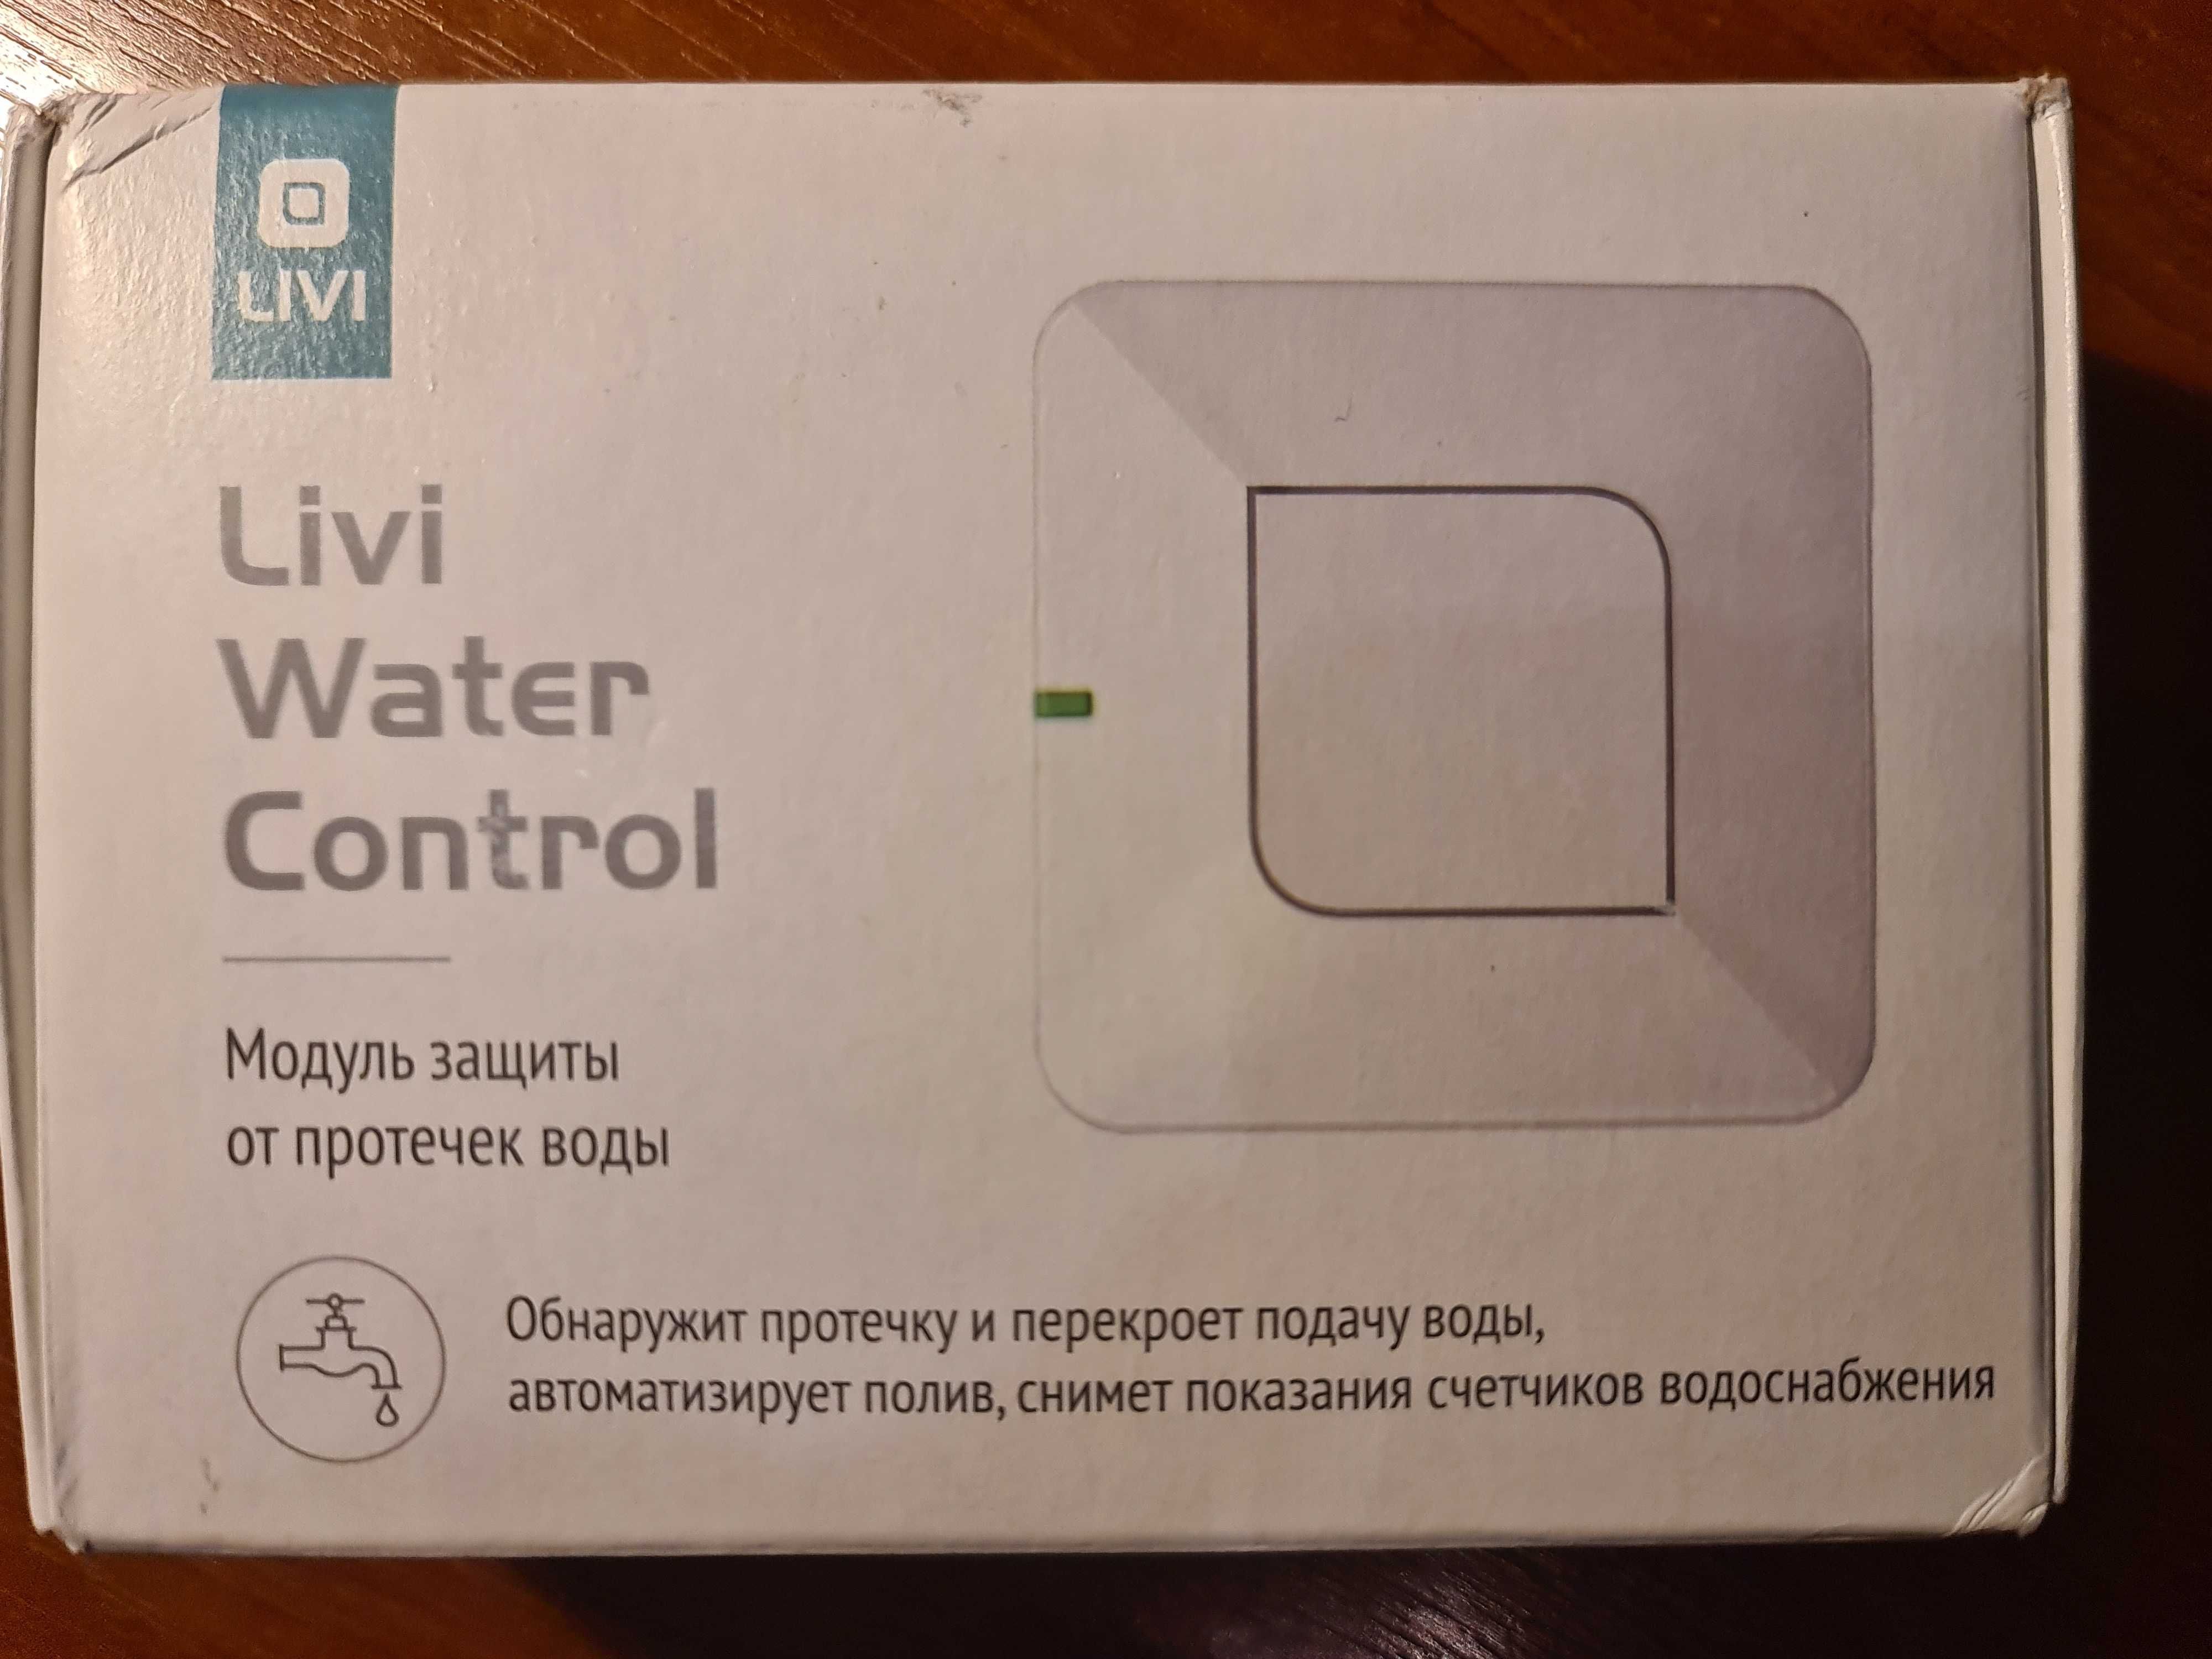 Модуль защиты от протечек воды Livi Water Control